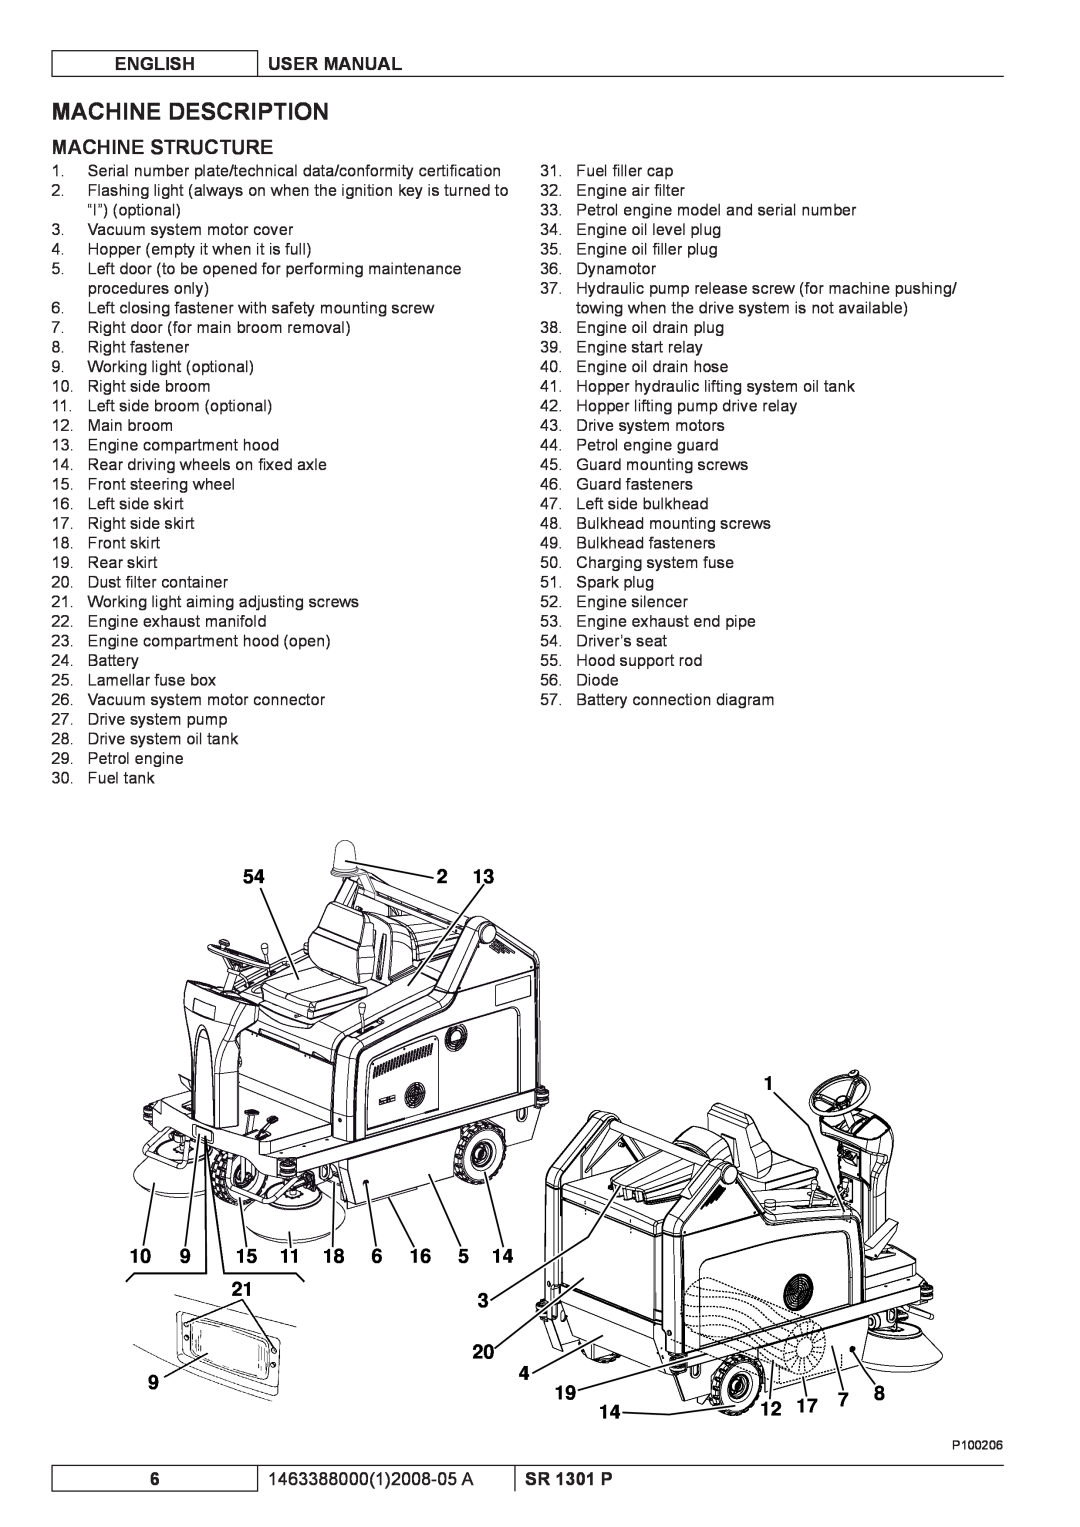 Nilfisk-ALTO SR 1301 P Machine Description, Machine Structure, English, User Manual, 146338800012008-05 A 